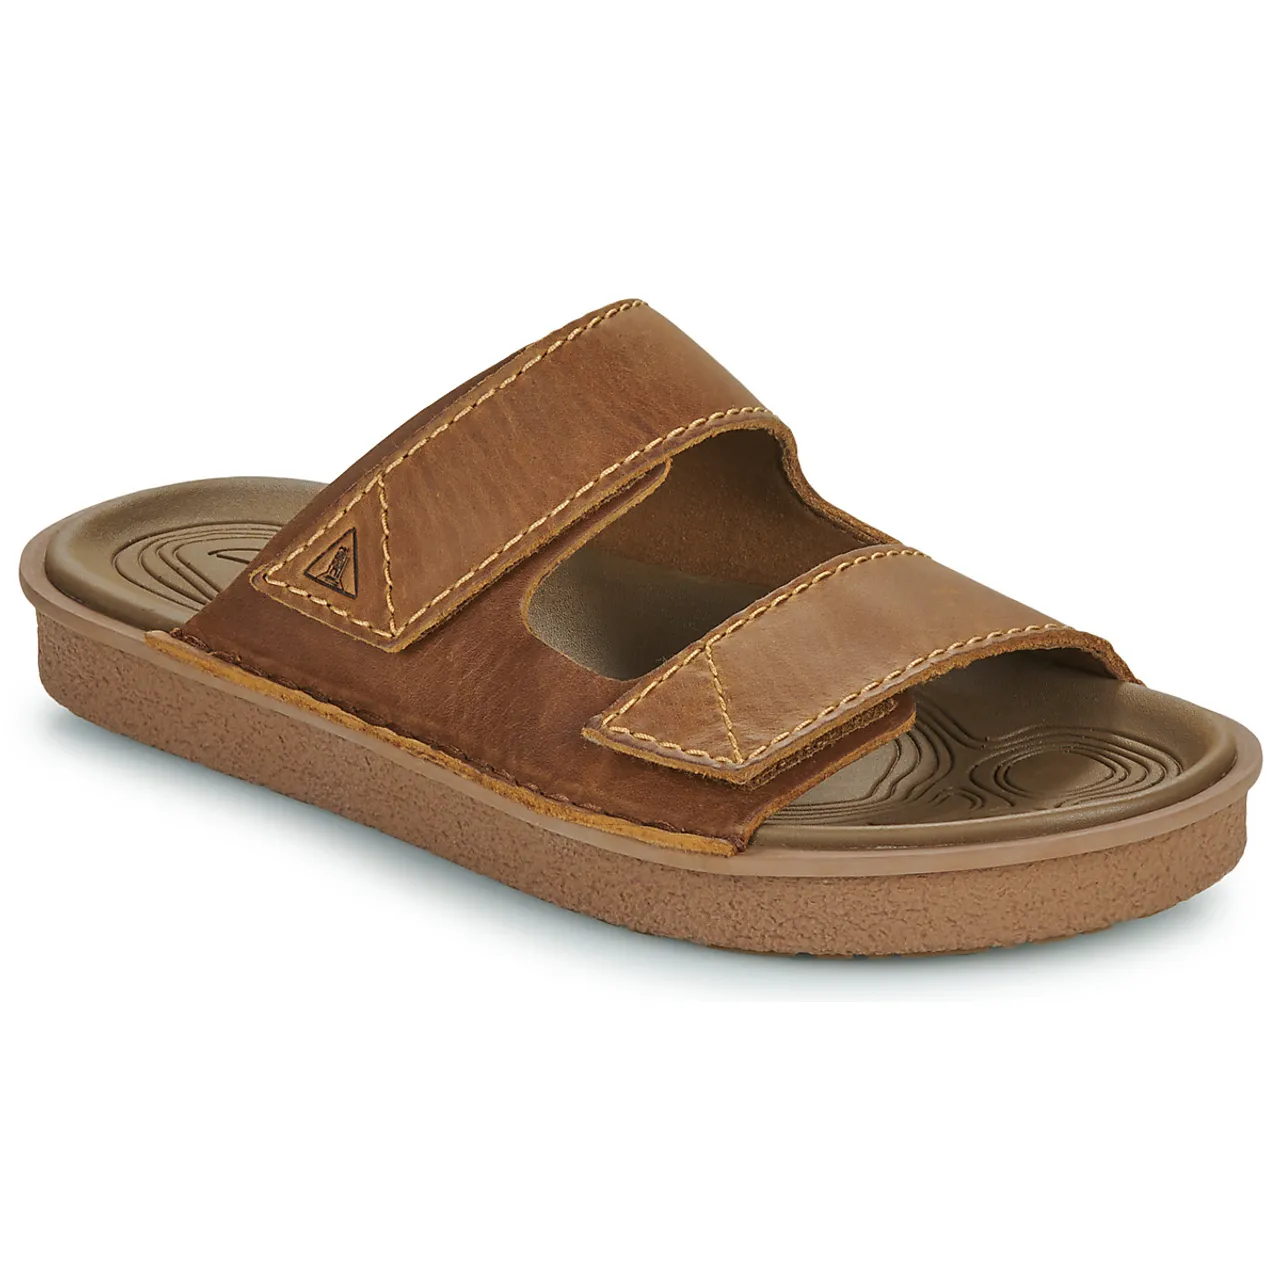 Clarks  LITTON STRAP  men's Sandals in Brown